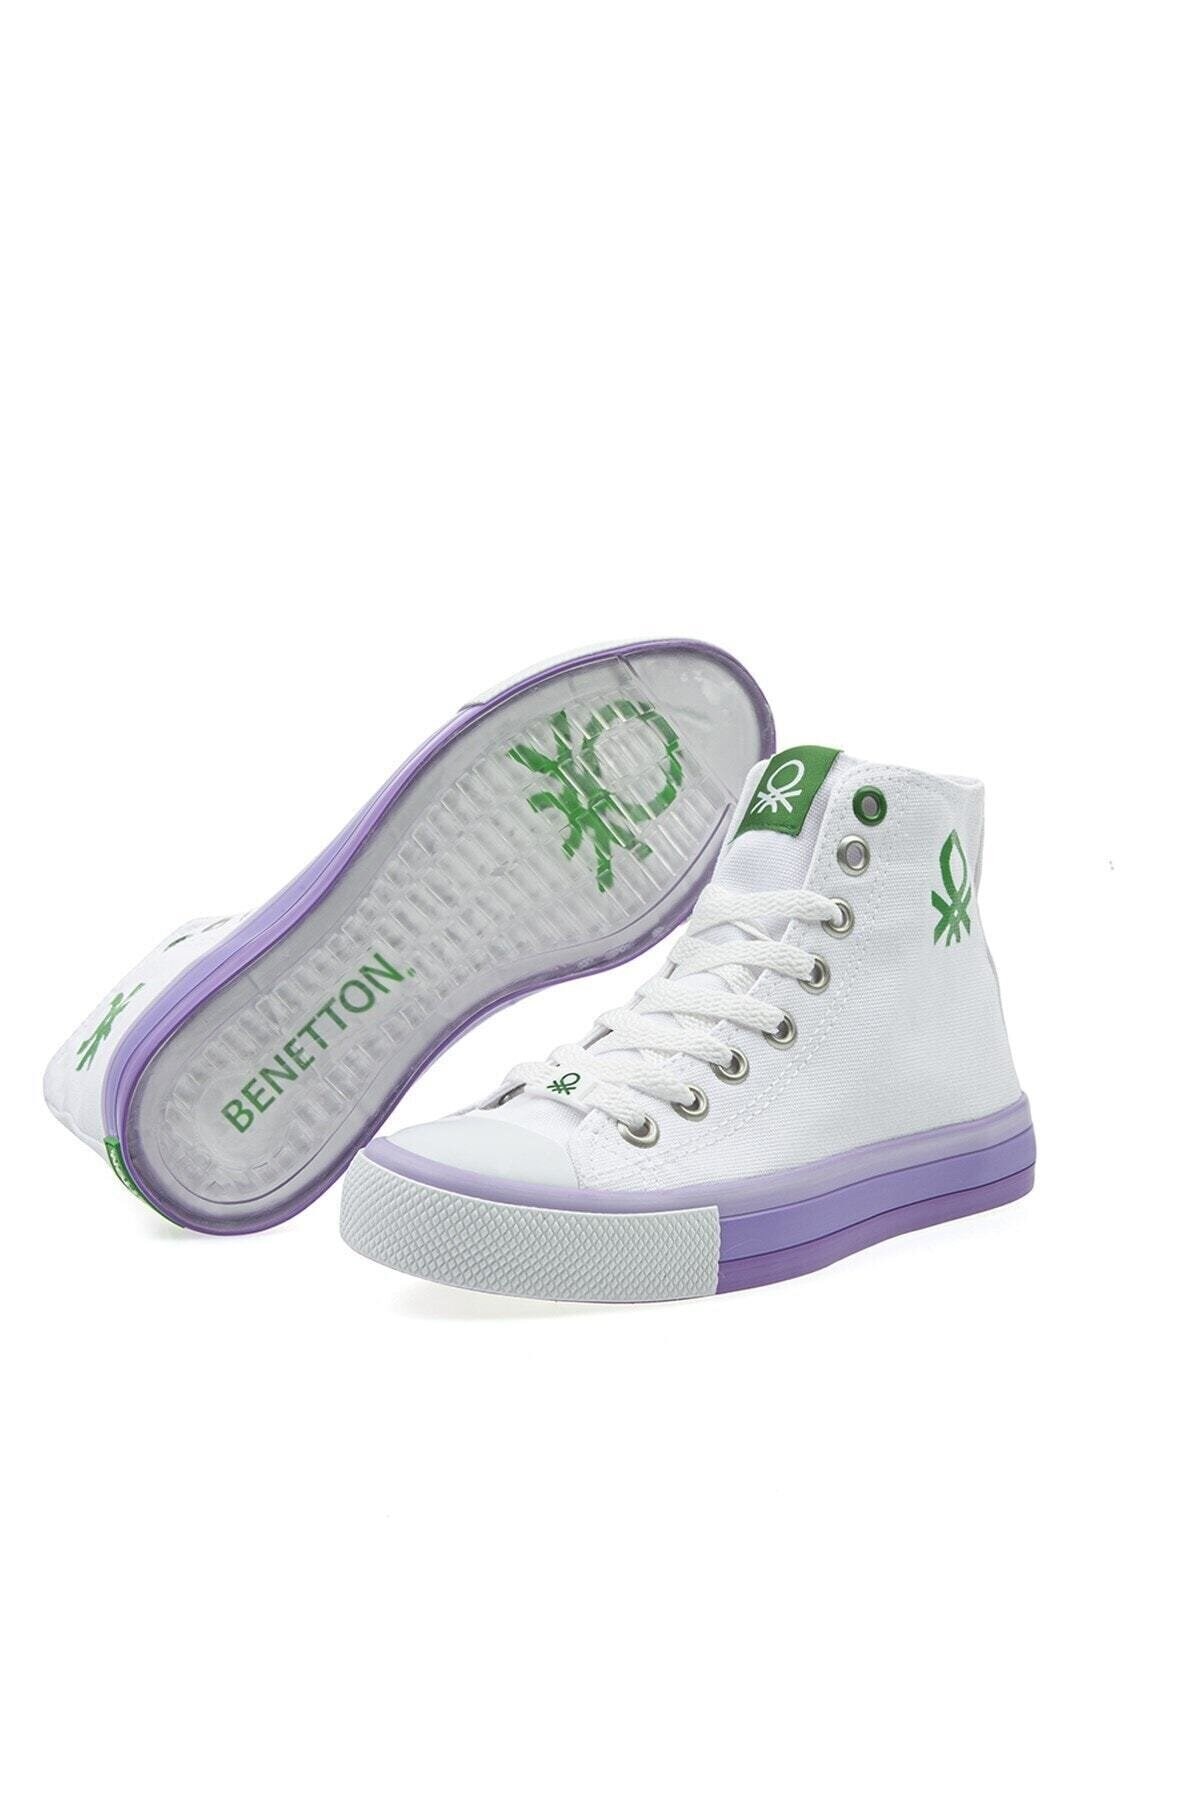 Benetton Kadın Ayakkabı BN-30189 316-Beyaz-Lila (Beyaz Tbn)